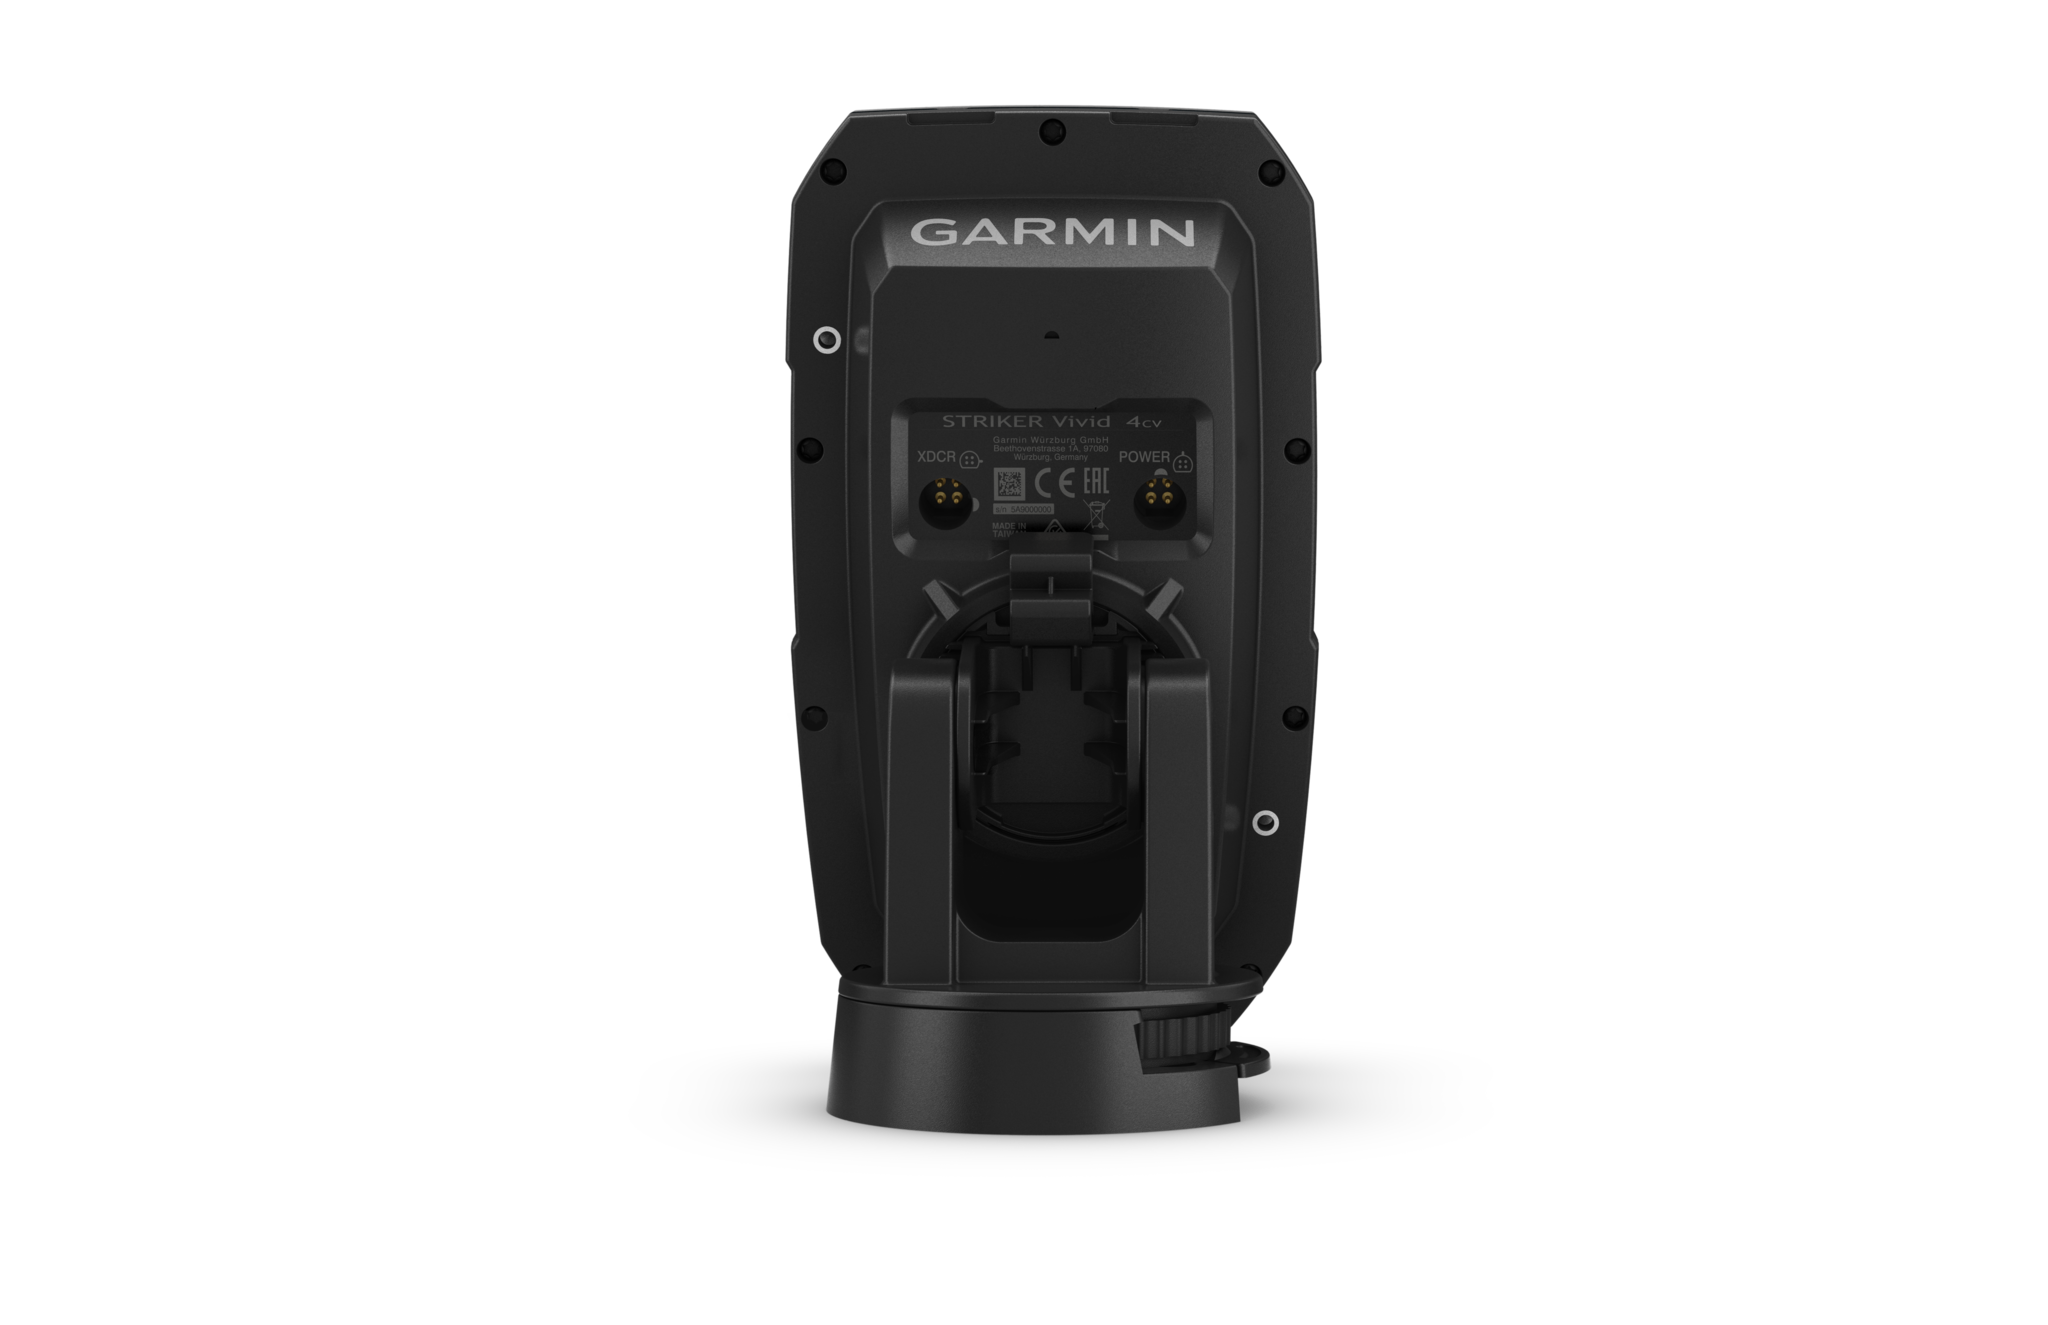 Garmin Striker Vivid 4cv  with GT20 Transducer